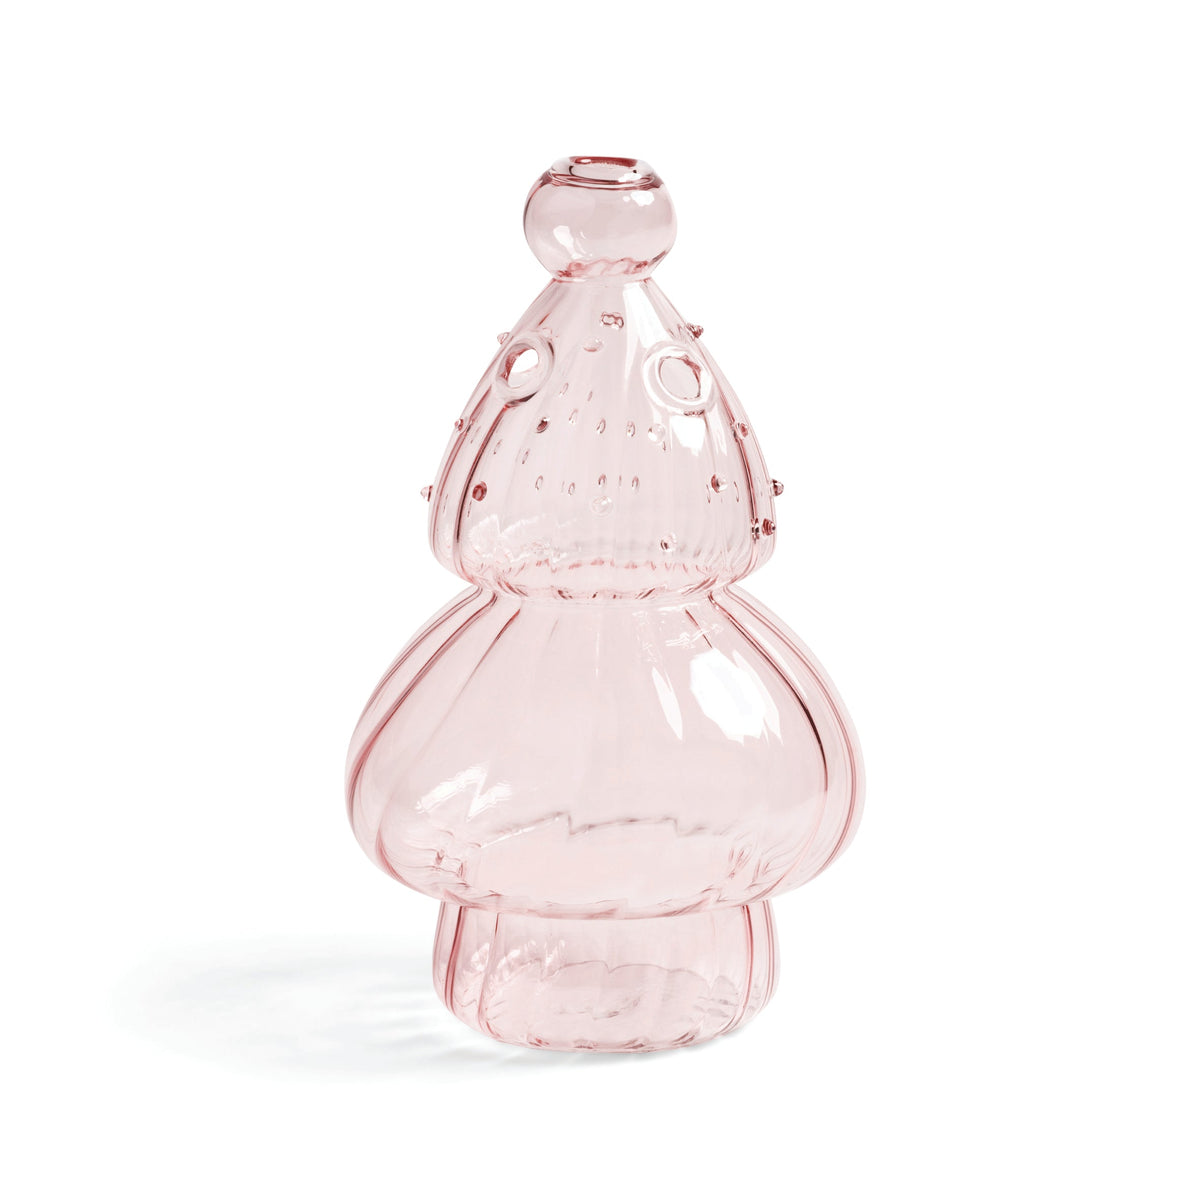 Vase i lyserødt glas fra &Klevering Amsterdam · Formet som et mini-juletræ ·  Niedziella & Friends